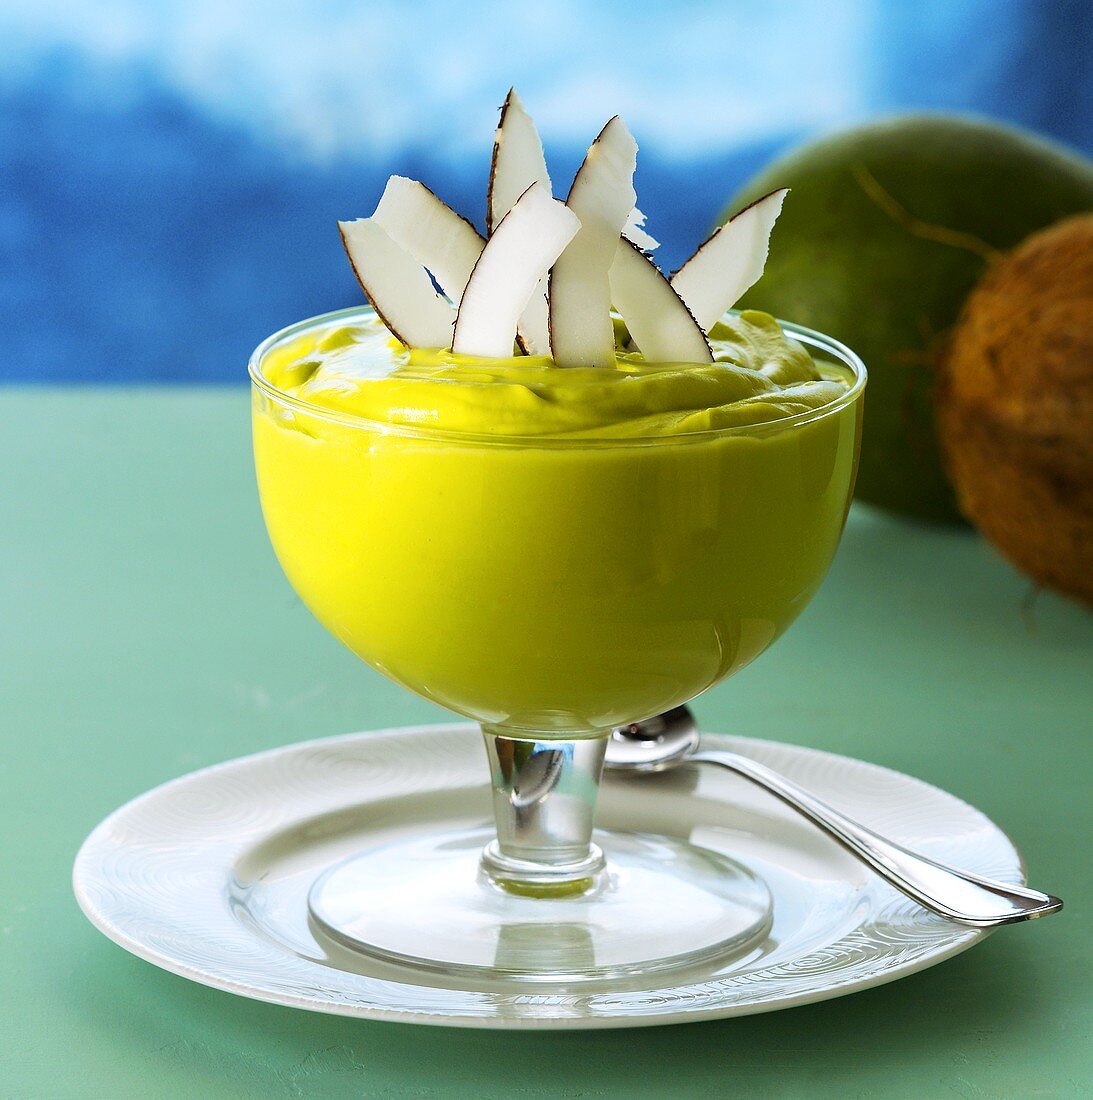 Crème de abacate (Avocado cream, Brazil)